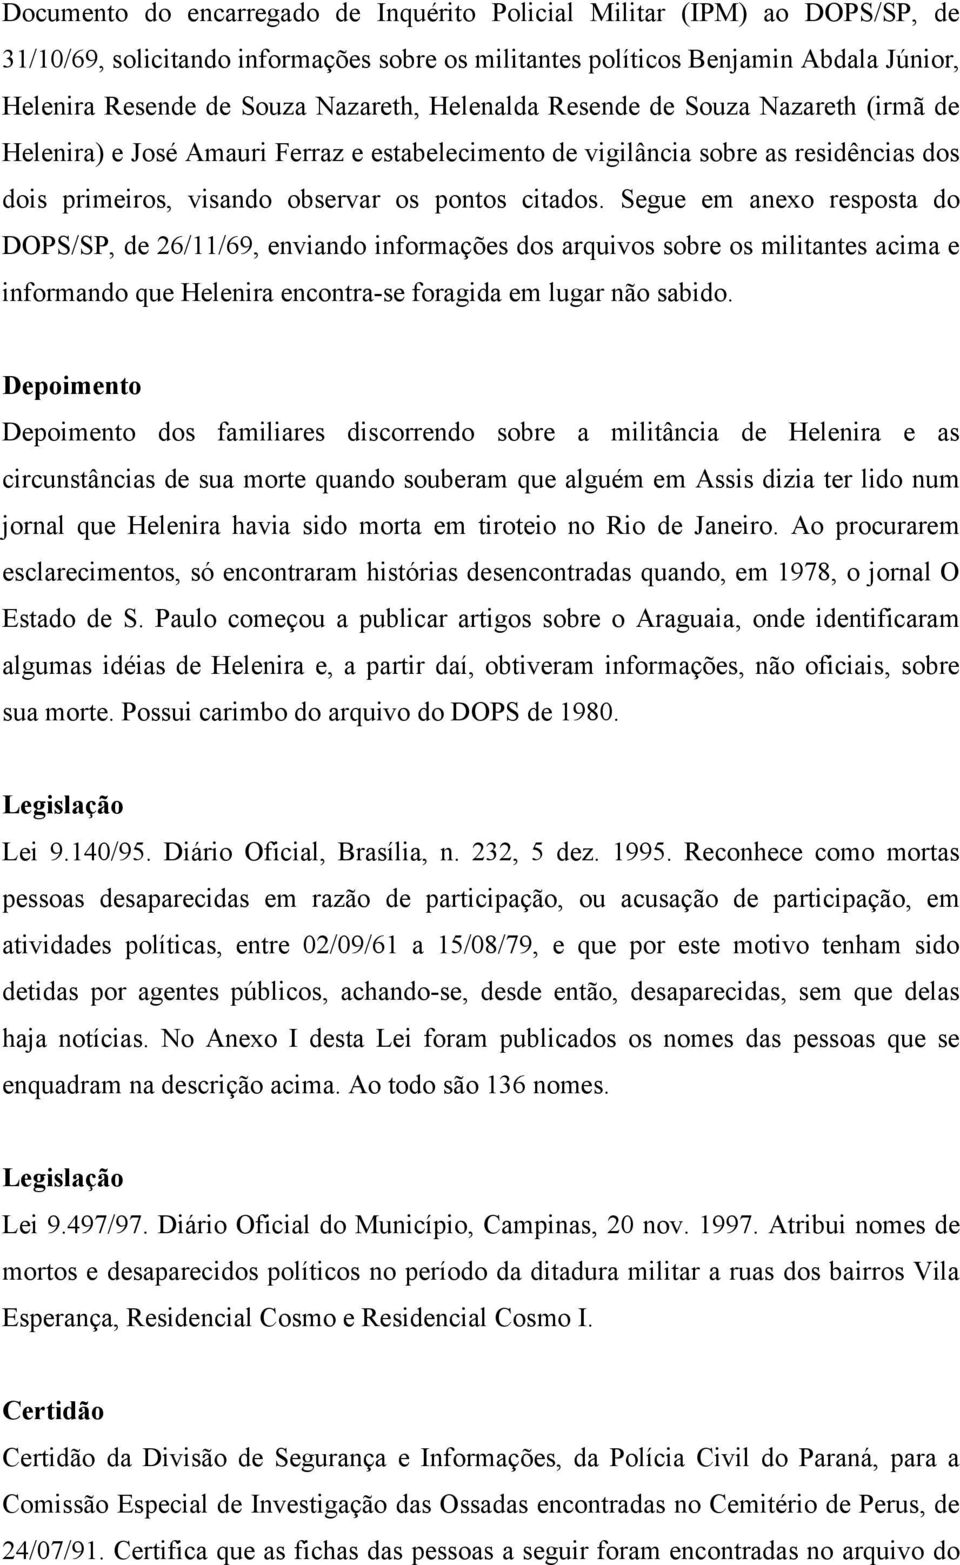 Segue em anexo resposta do DOPS/SP, de 26/11/69, enviando informações dos arquivos sobre os militantes acima e informando que Helenira encontra-se foragida em lugar não sabido.